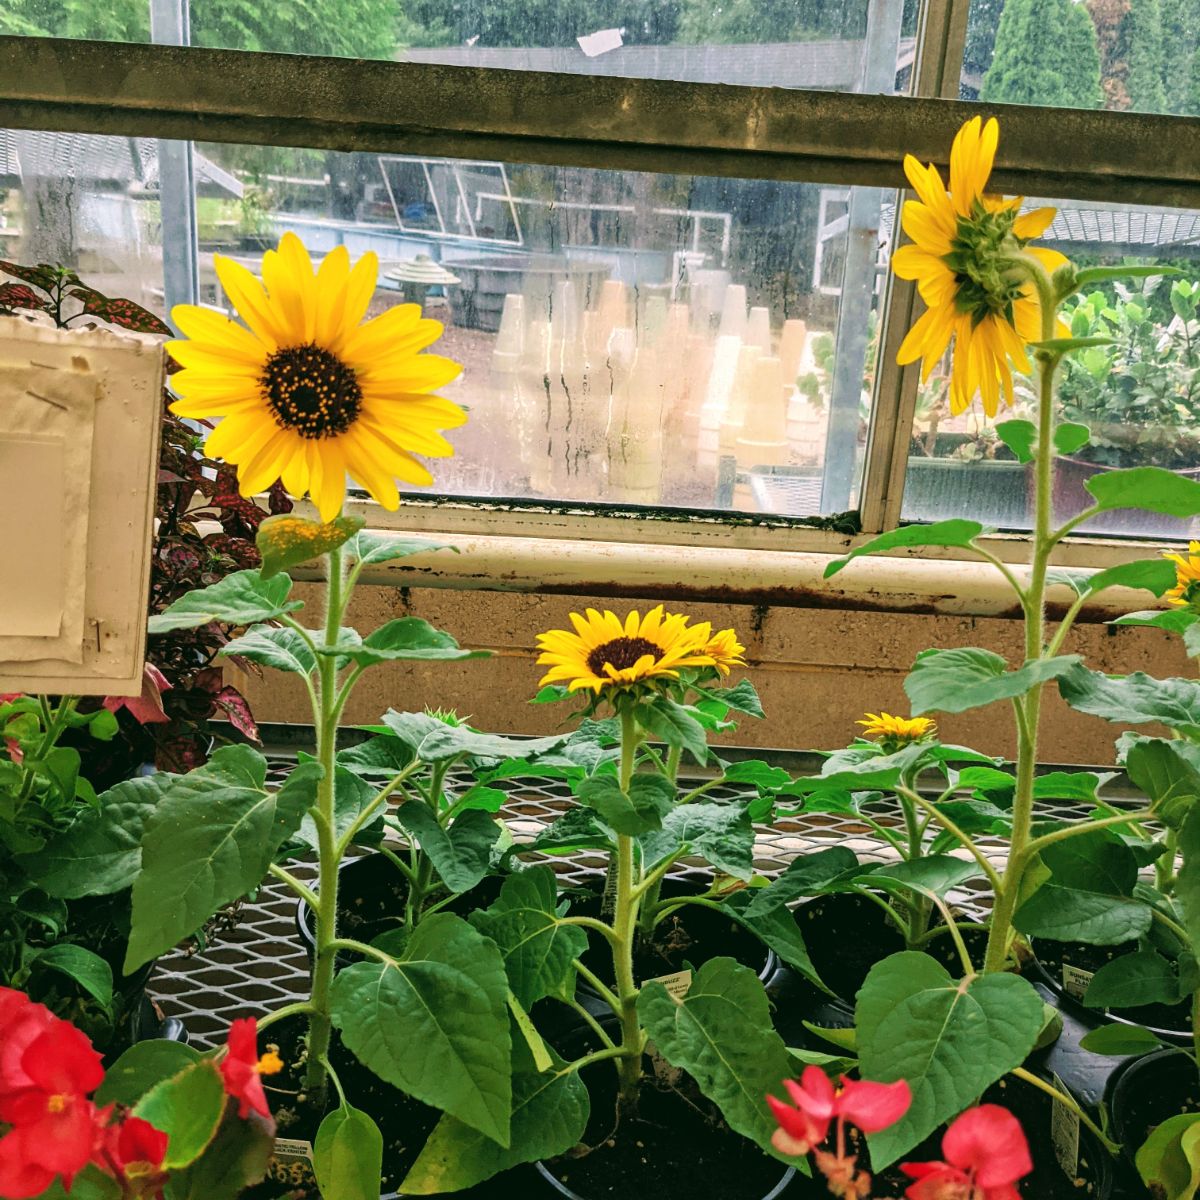 Dwarf sunflower plants in a greenhouse near a window